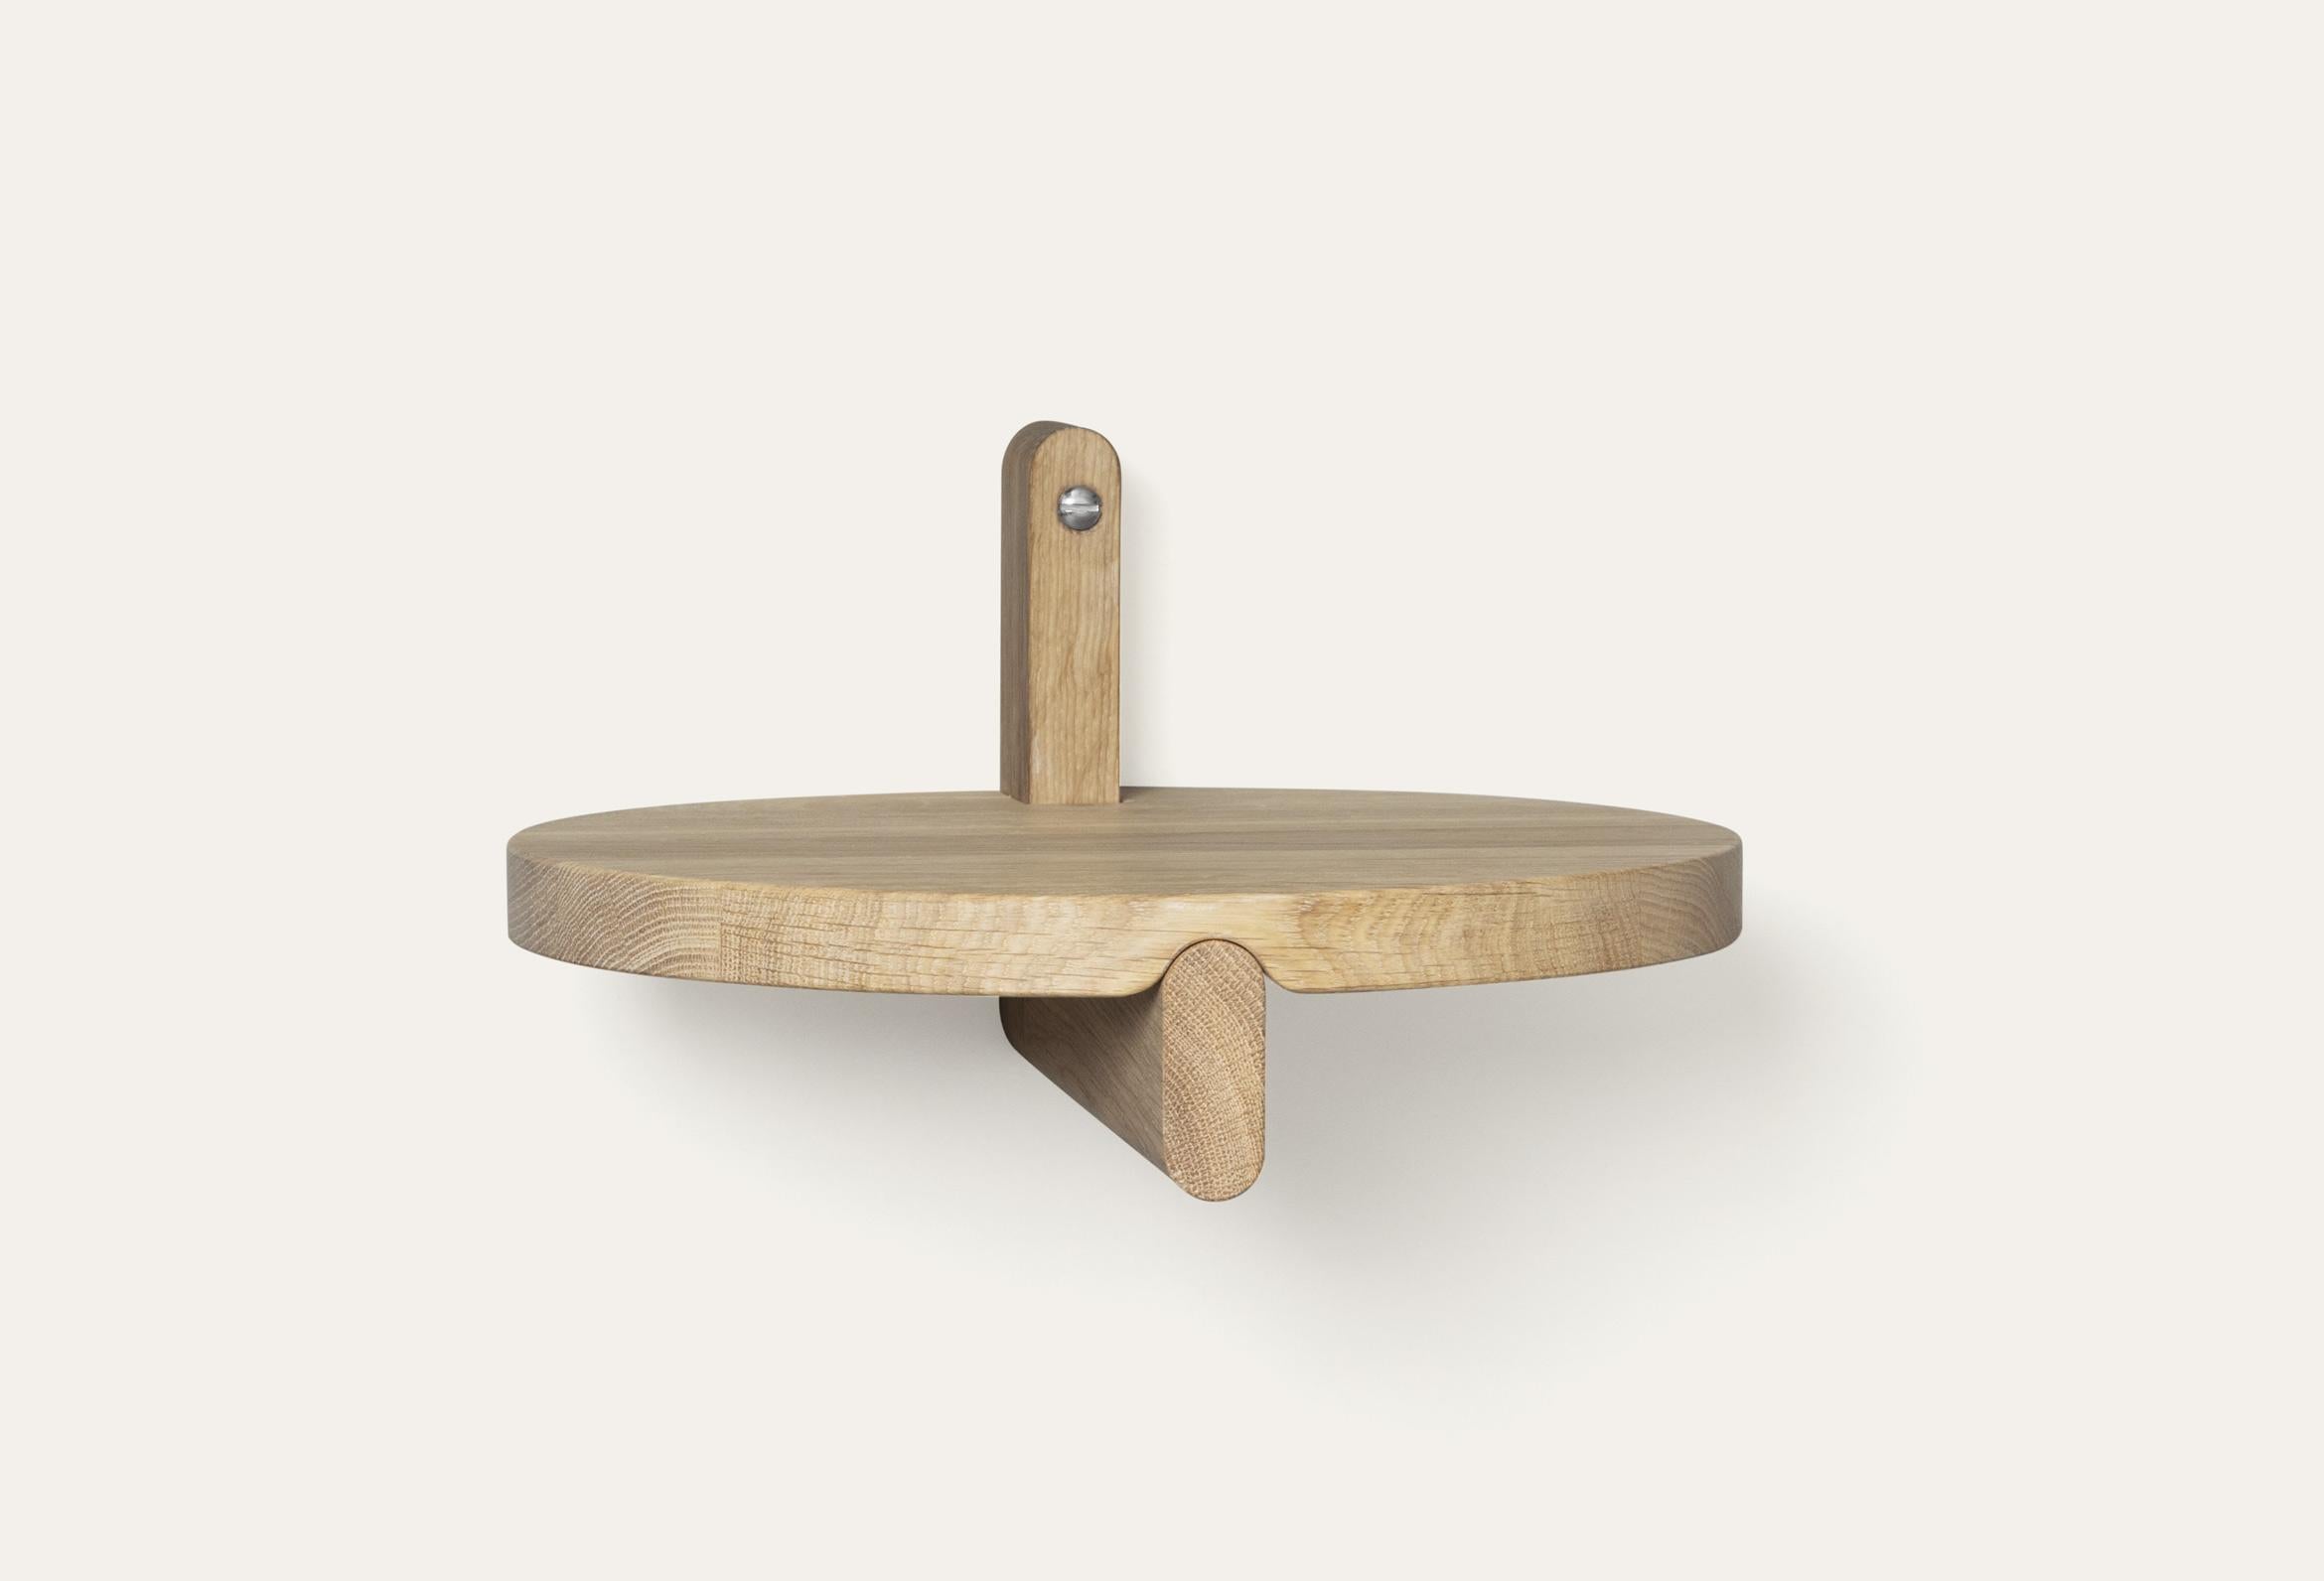 Rundes Regal Natural Rondelle von Storängen Design
Abmessungen: D 25 x H 14 cm
MATERIAL: Eichenholz.
Erhältlich in anderen Farben und mit oder ohne Stahlbügel.

Rondelle kann ein Regal oder ein kleiner Tisch sein, je nach Ihren Bedürfnissen. Er hat